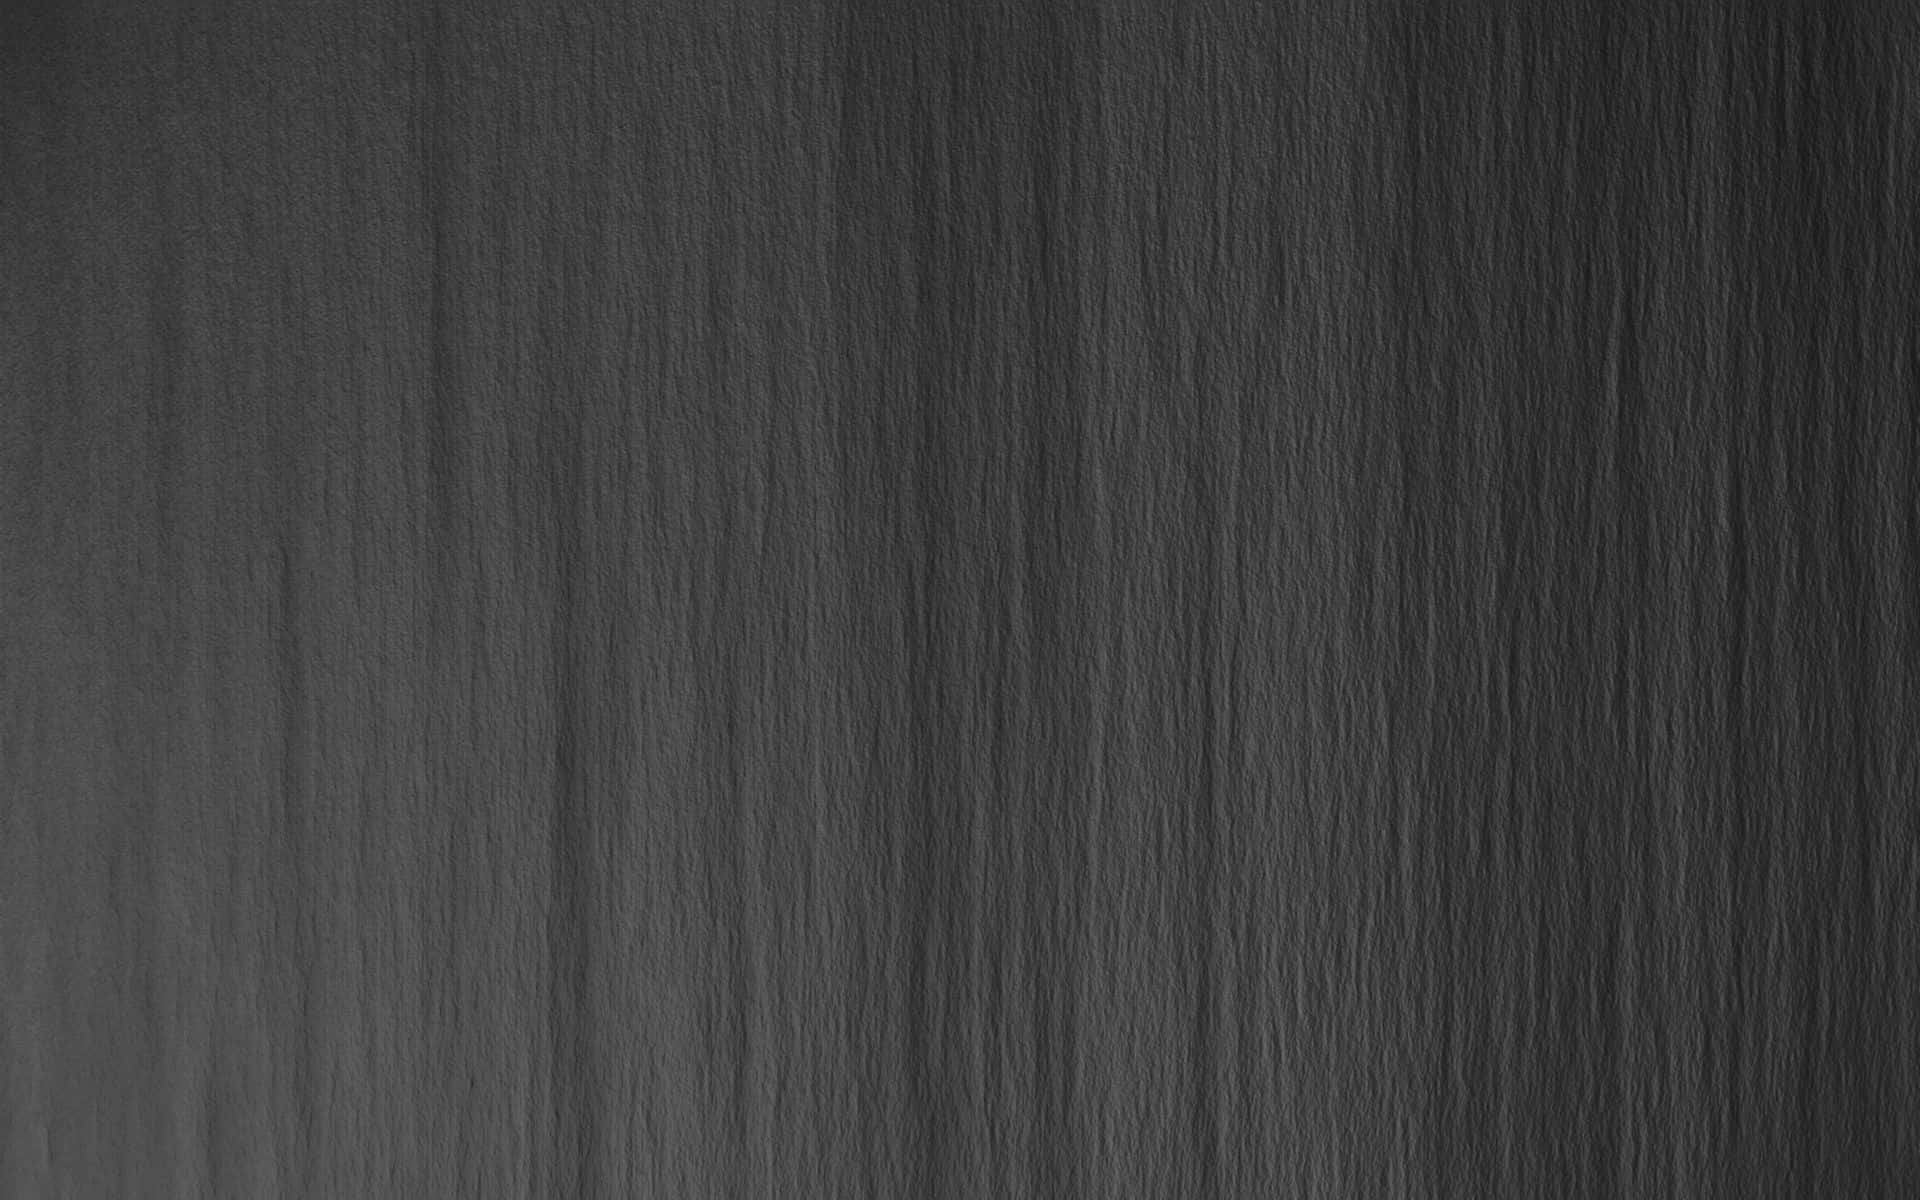 Uneven Cement Wall Dark Grey Background